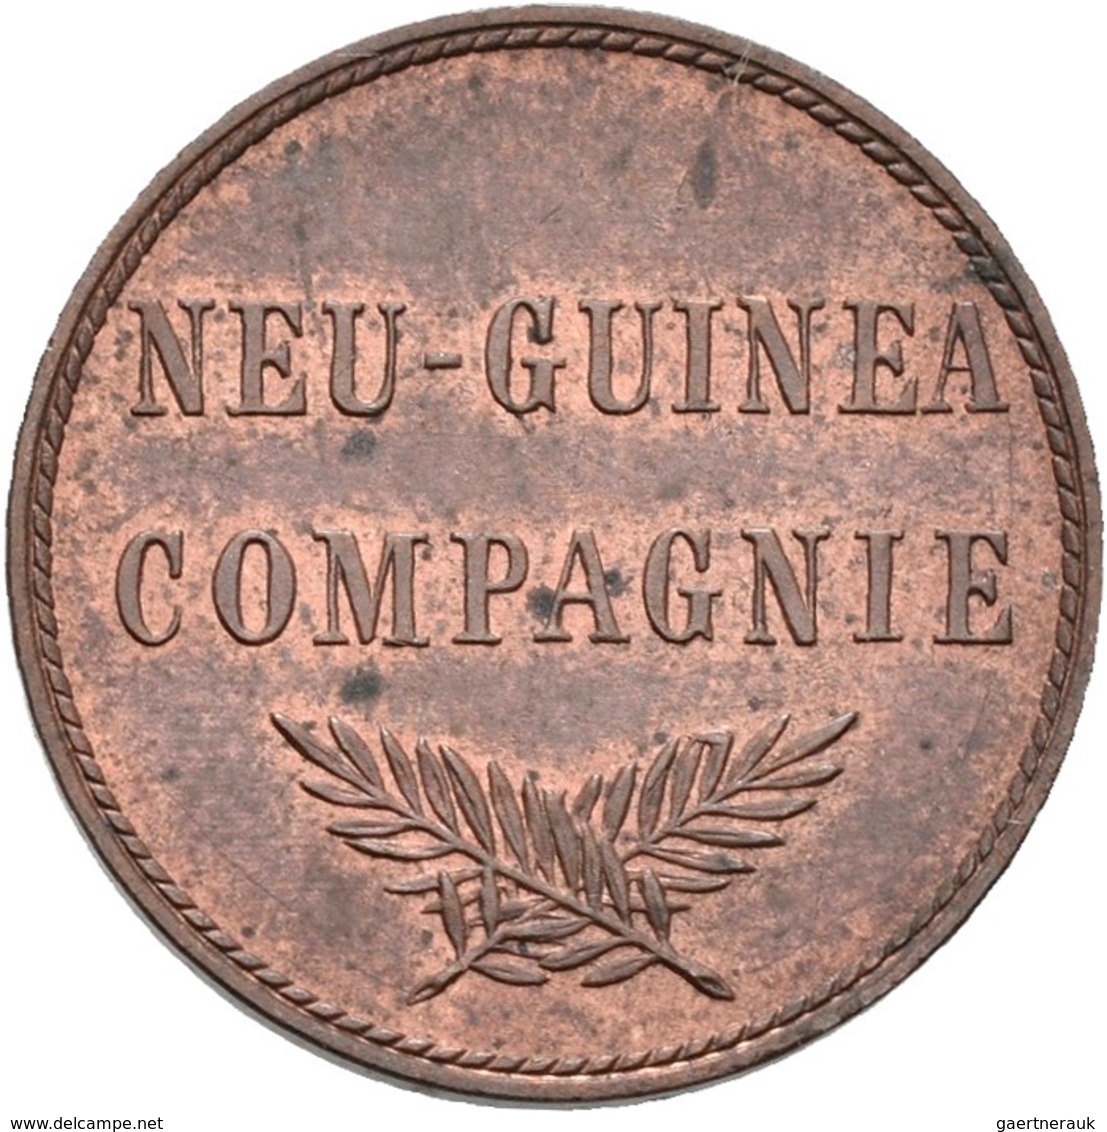 Deutsch-Neuguinea: 1 Neu-Guinea Pfennig 1894 A, Jaeger 702, Leichte Patina, Vorzüglich. - Deutsch-Neuguinea